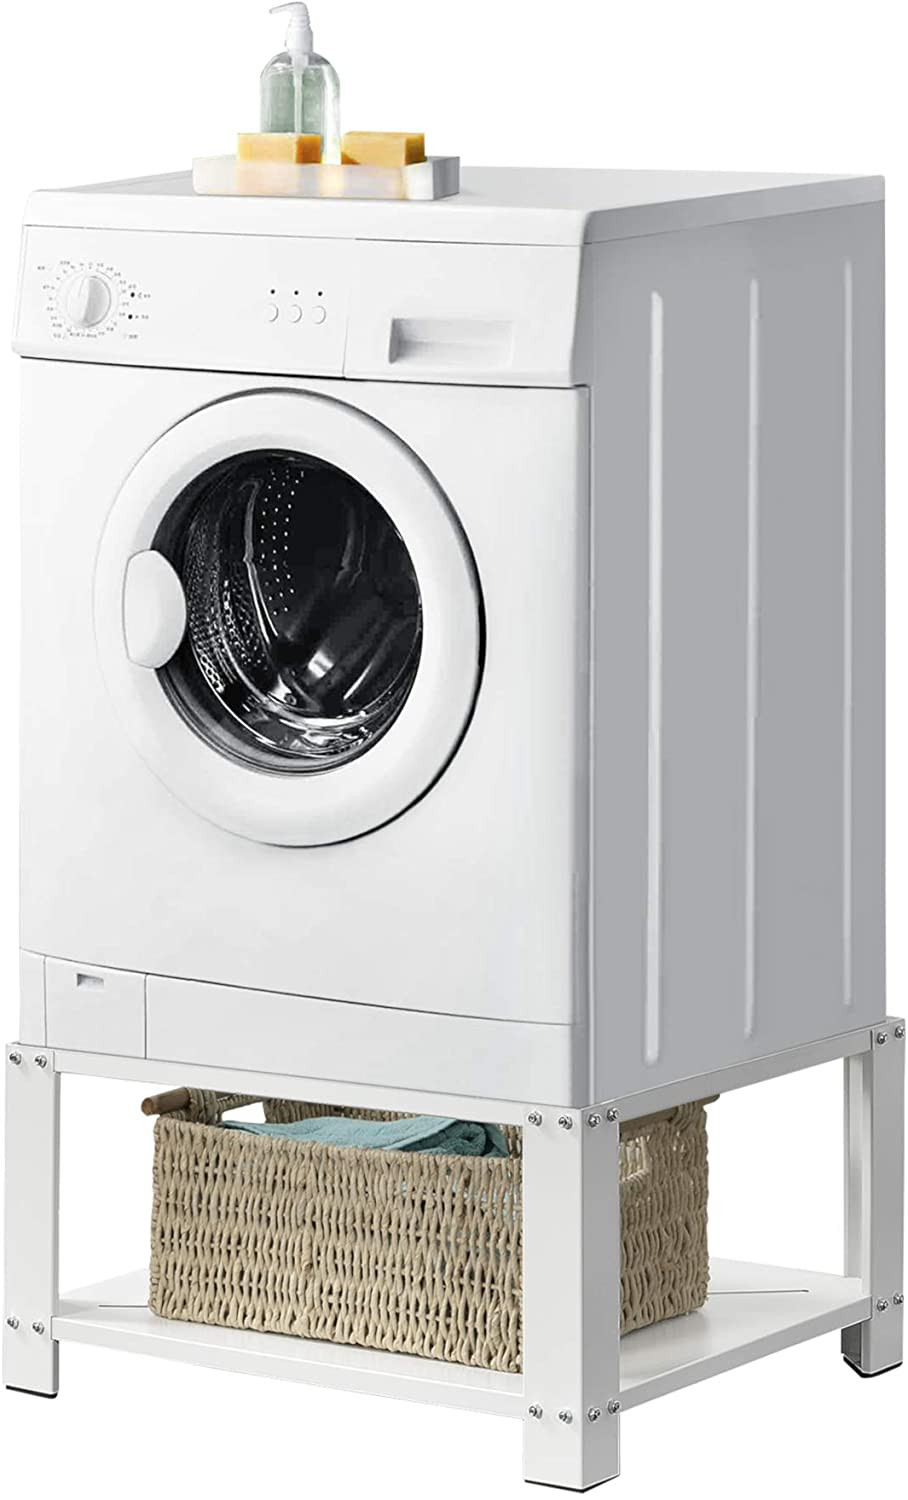 Elevador universal (zócalo) incl. cajón ajustable para lavadora y secadora  60600901